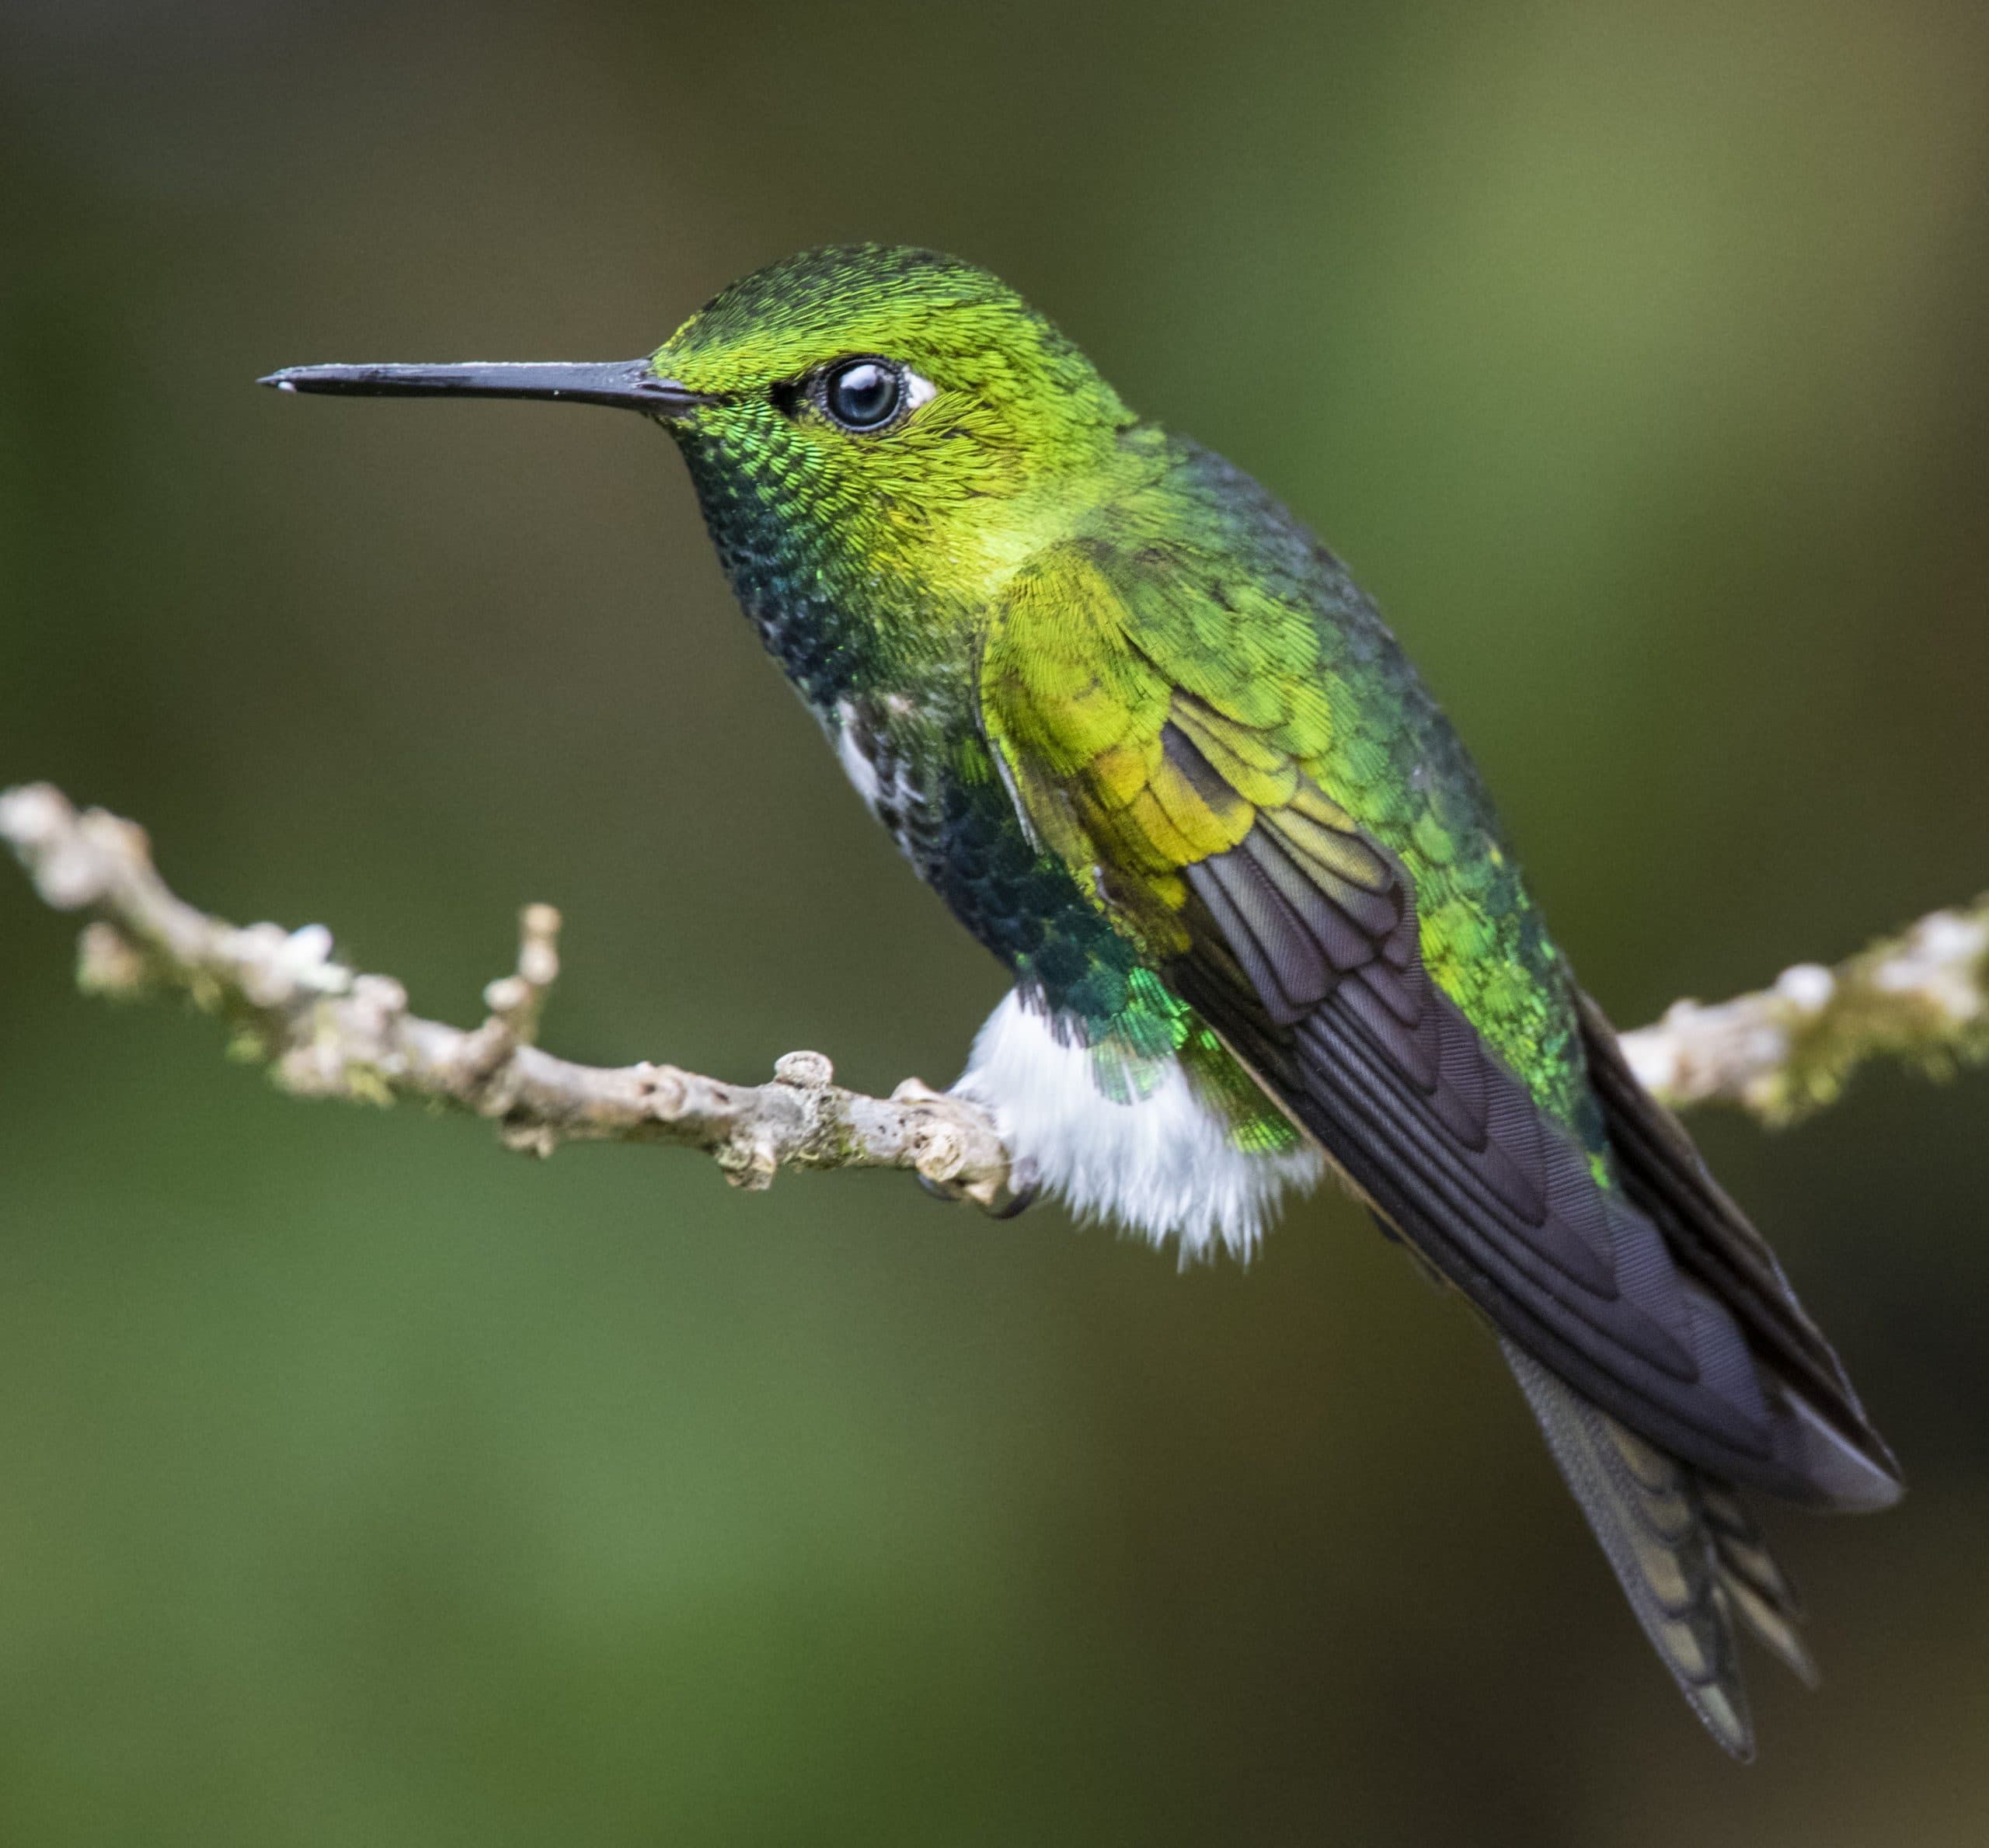 Puffleg Hummingbirds: The Birds That Wear Boots